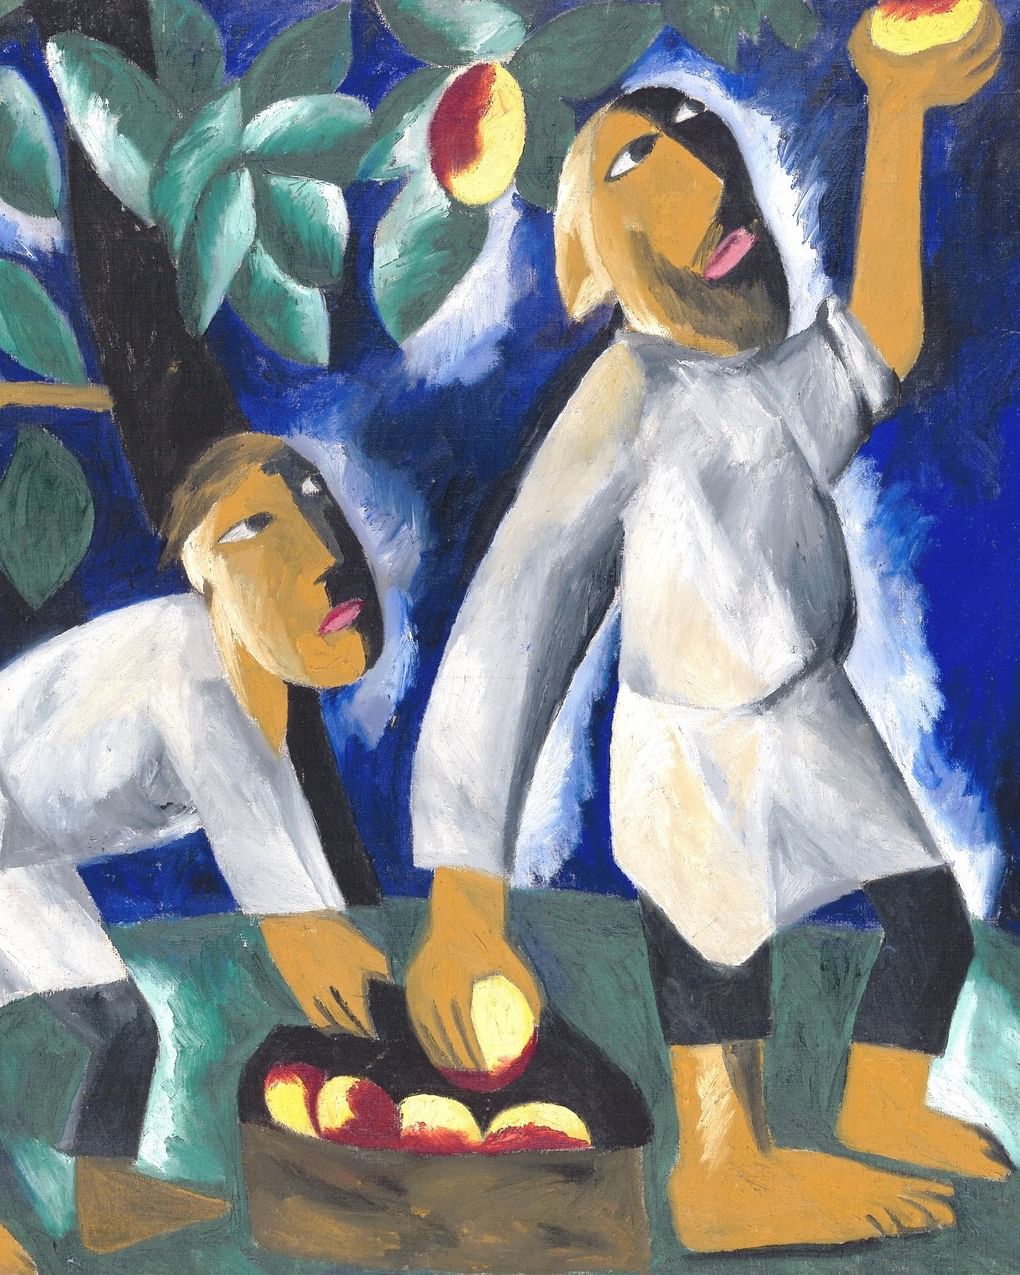 Наталия Гончарова. Крестьяне, собирающие яблоки. 1911. Государственная Третьяковская галерея, Москва